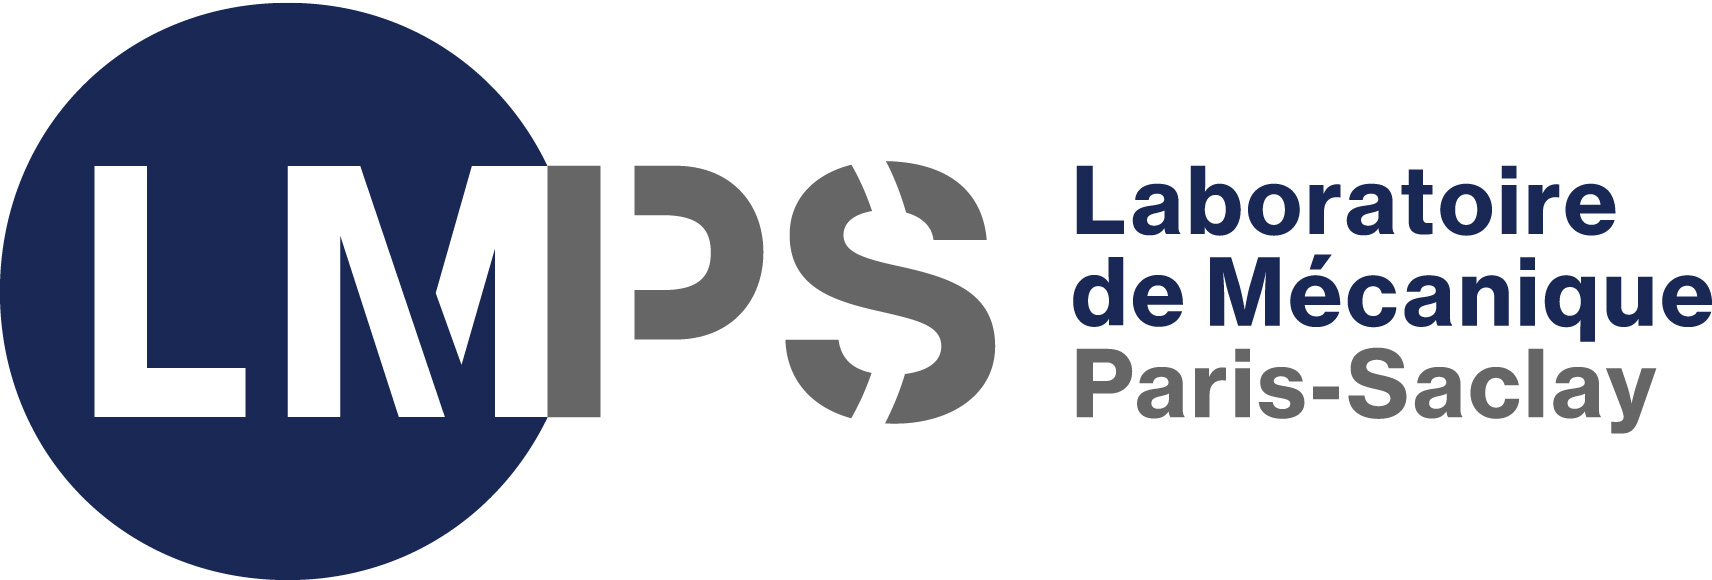 LMPS - Laboratoire de Mécanique Paris-Saclay